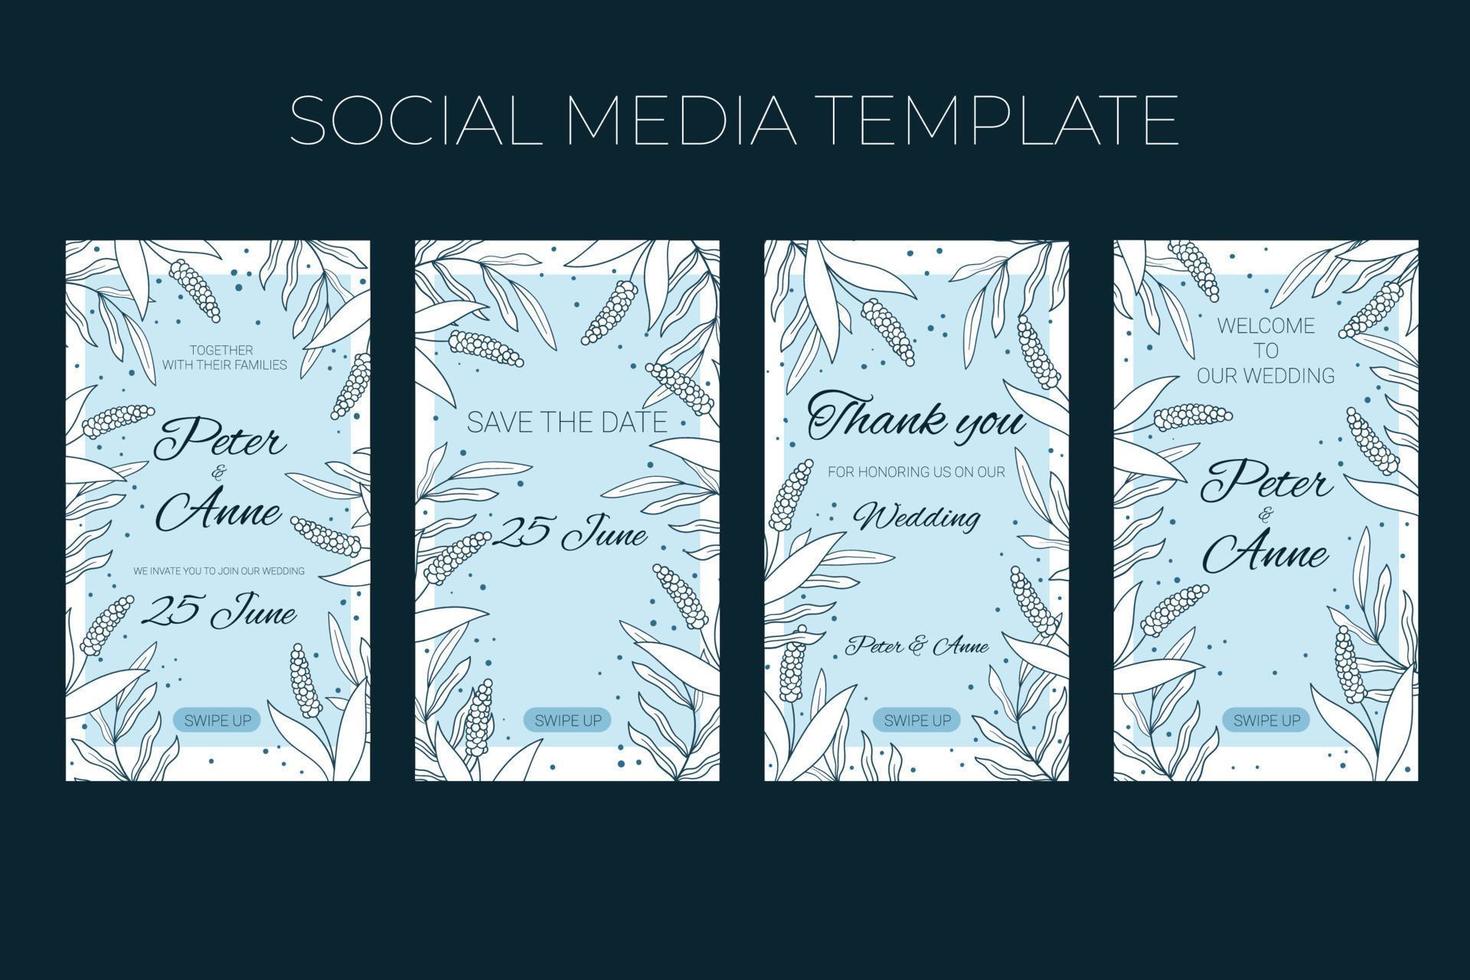 modèle de médias sociaux verticaux de mariage floral dans un style doodle dessiné à la main, conception de cartes d'invitation avec des fleurs et des feuilles de ligne, des points. cadre décoratif de vecteur sur fond blanc et bleu.